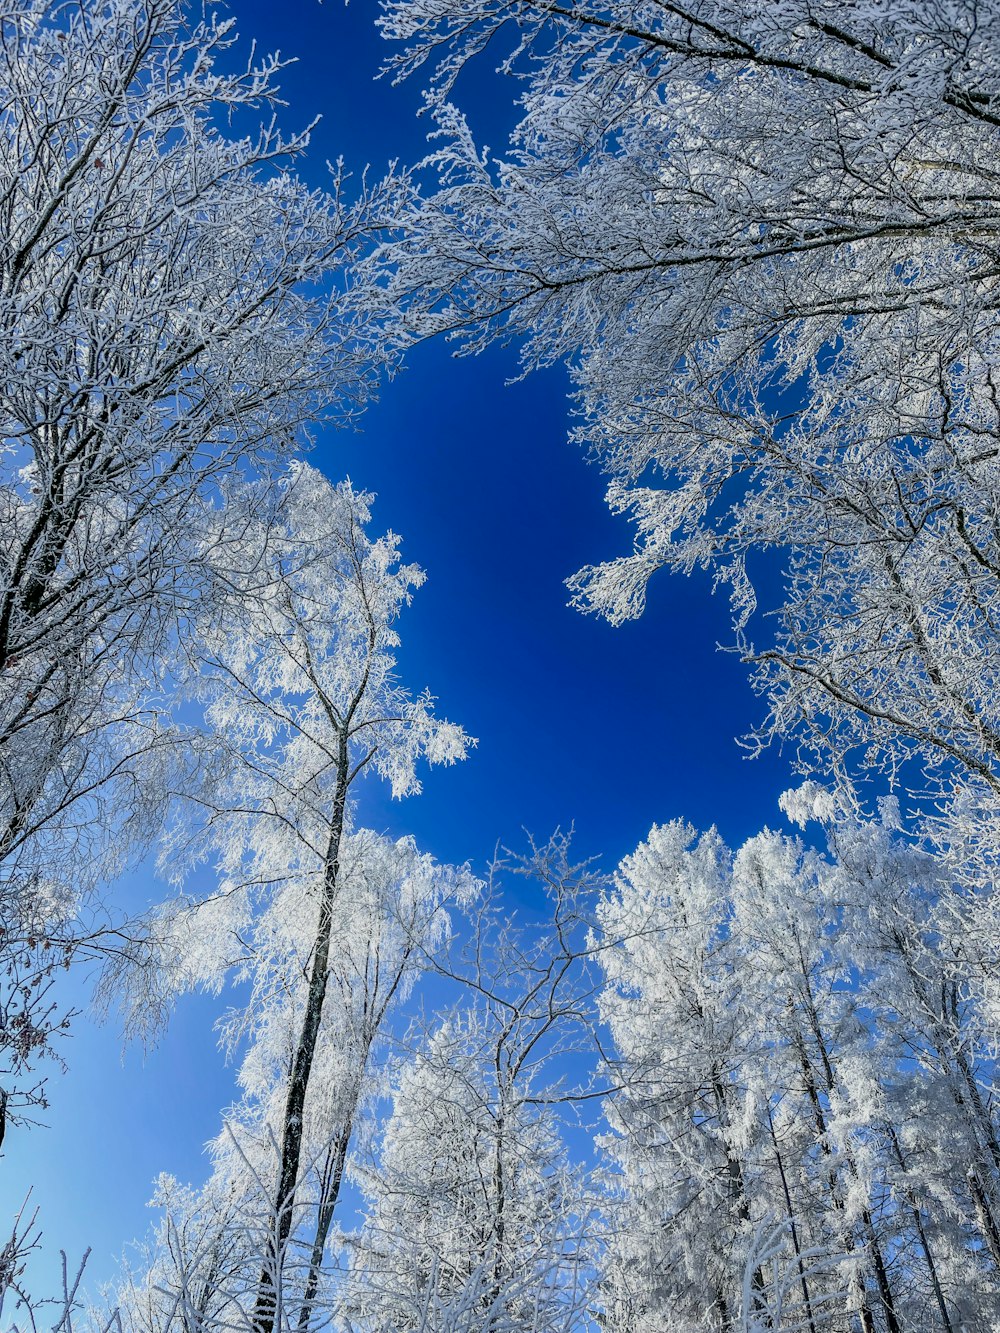 나무 사이로 푸른 하늘이 보인다